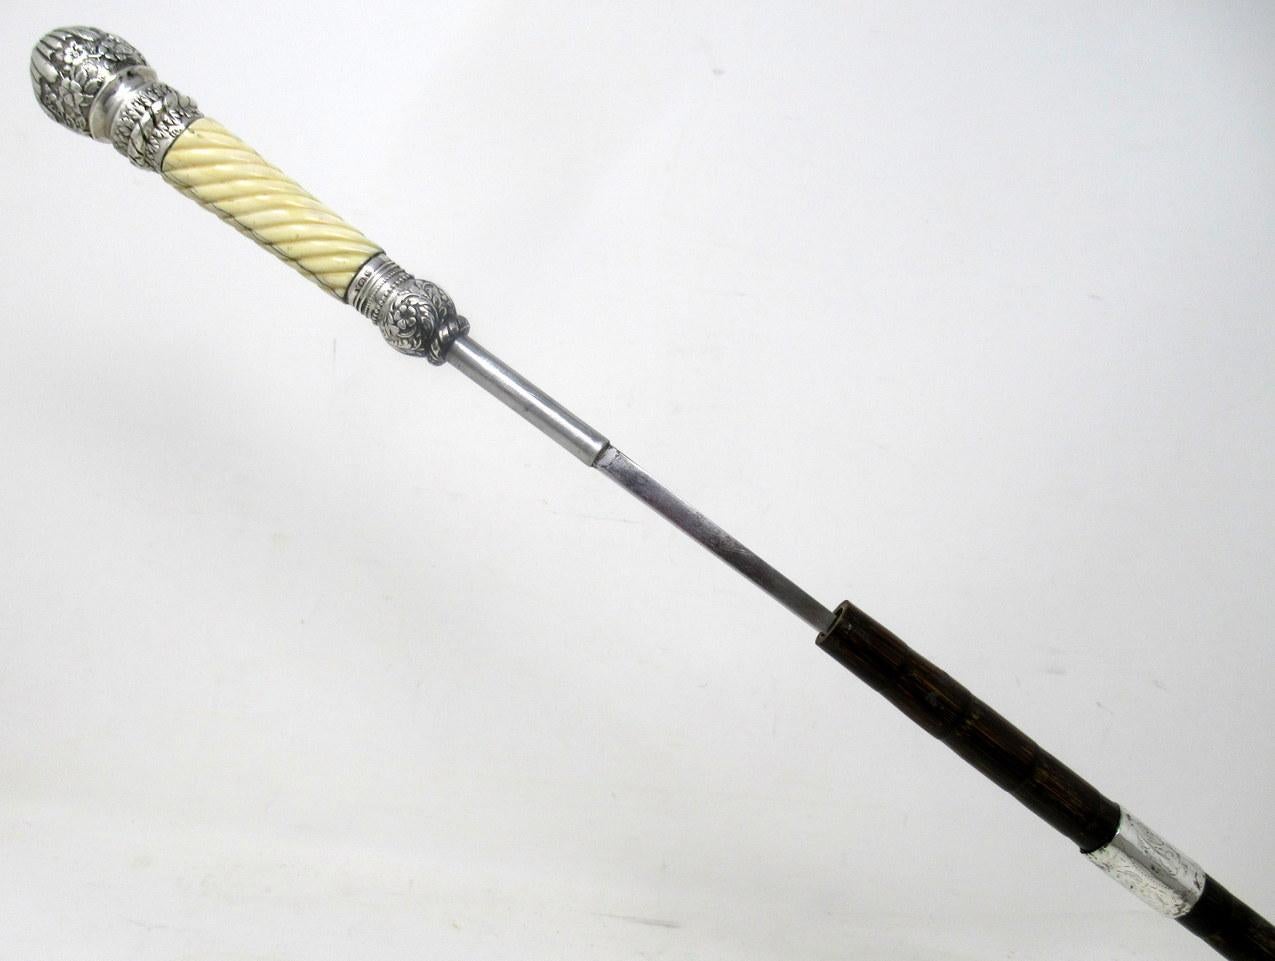 Polished Antique Gentlemans Sword Walking Stick Cane Sterling Silver Partridge Wood, 1891